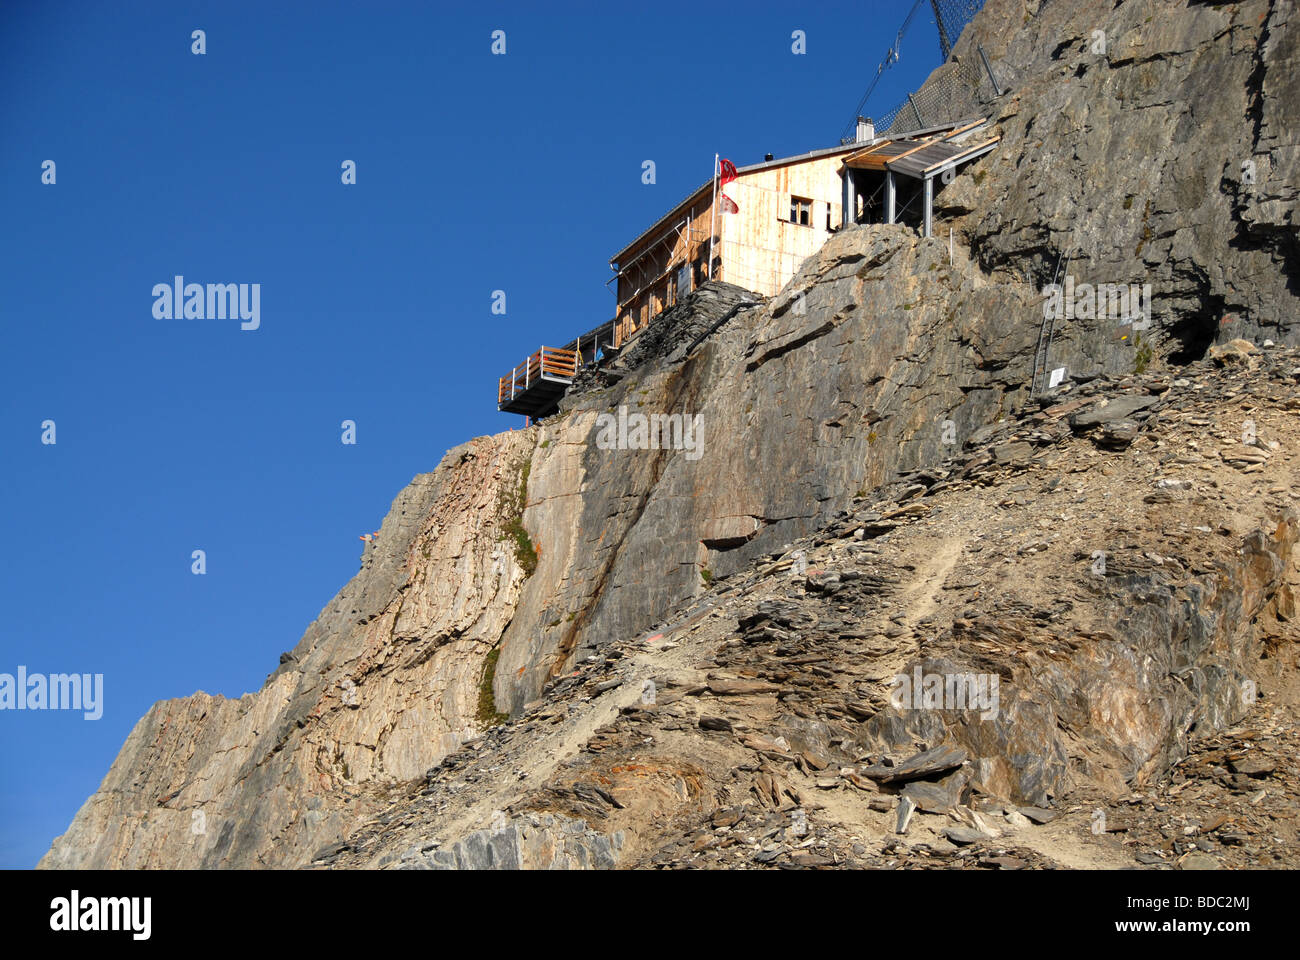 Obaraarjoch refuge de montagne Club alpin suisse alpes bernoises en Suisse Banque D'Images